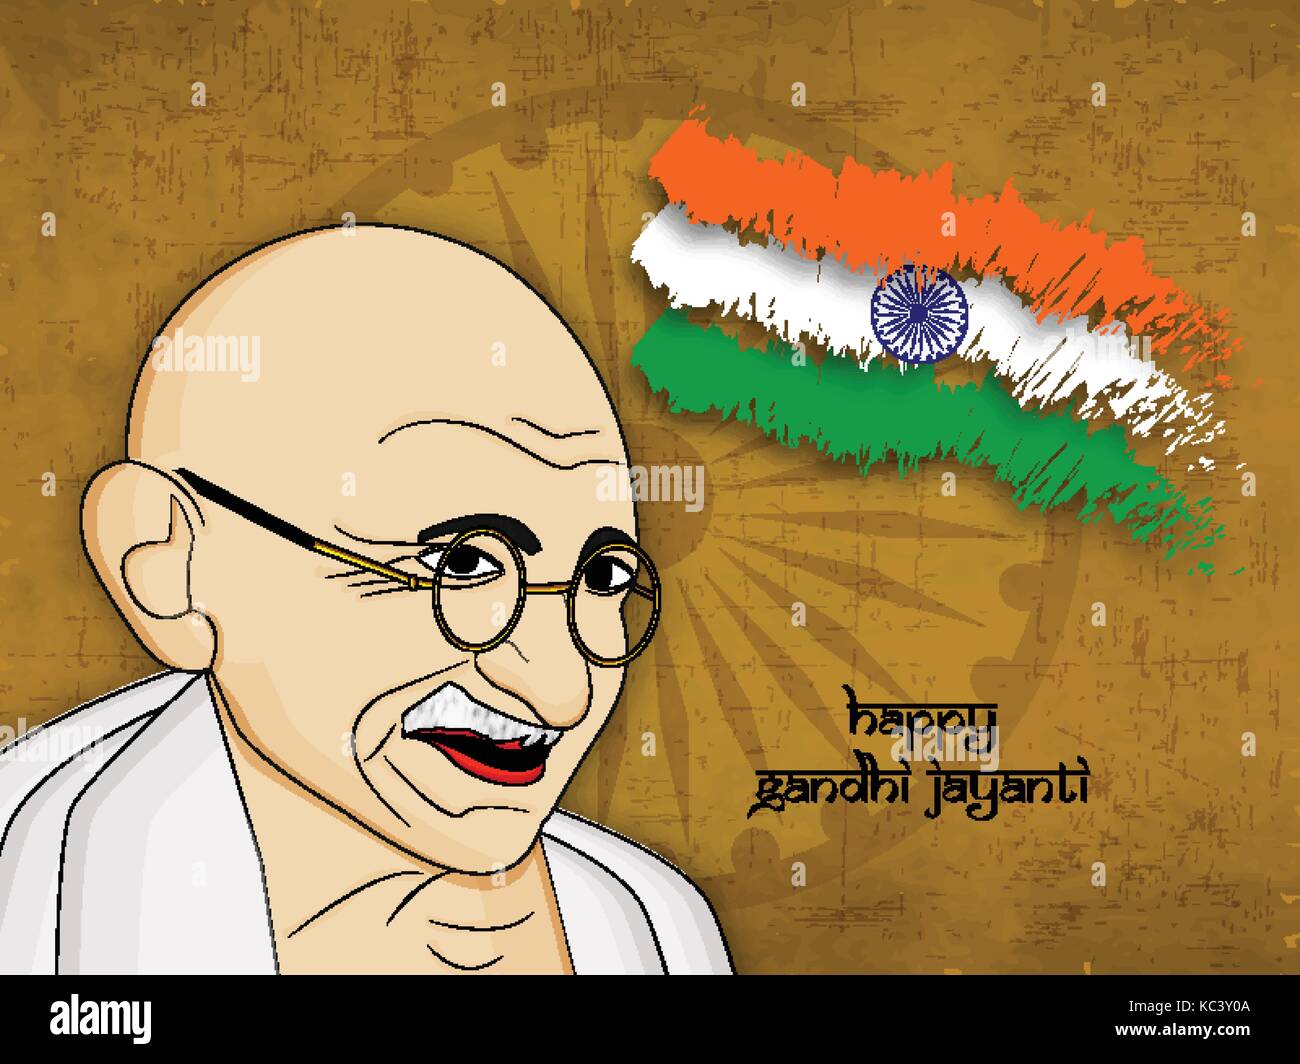 Abbildung der Elemente von Gandhi jayanti Hintergrund. Gandhi jayanti ist ein Nationales Festival feierte in Indien anlässlich des Geburtstages zu markieren Stock Vektor